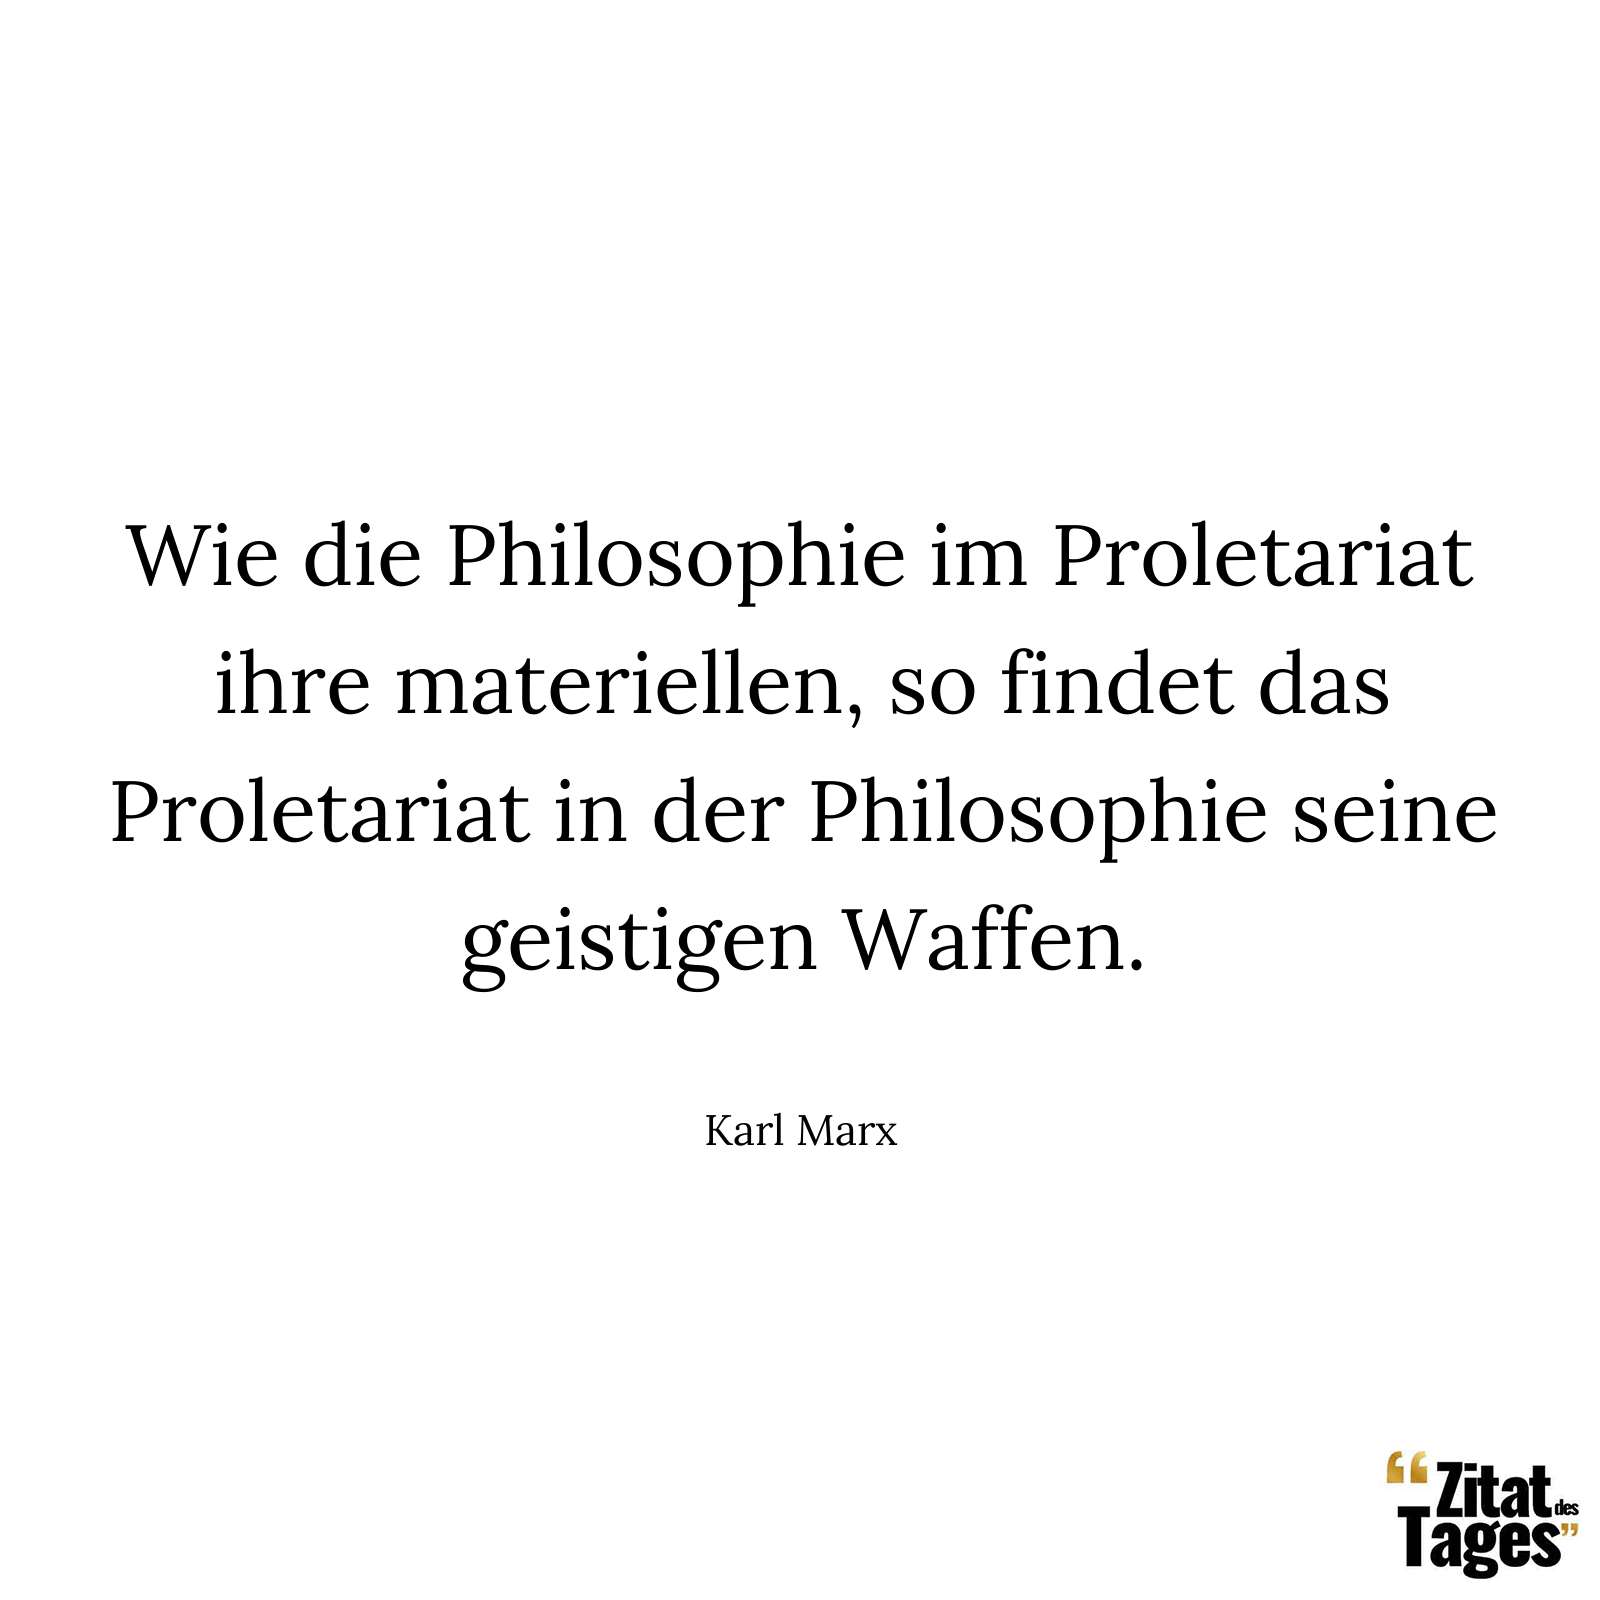 Wie die Philosophie im Proletariat ihre materiellen, so findet das Proletariat in der Philosophie seine geistigen Waffen. - Karl Marx